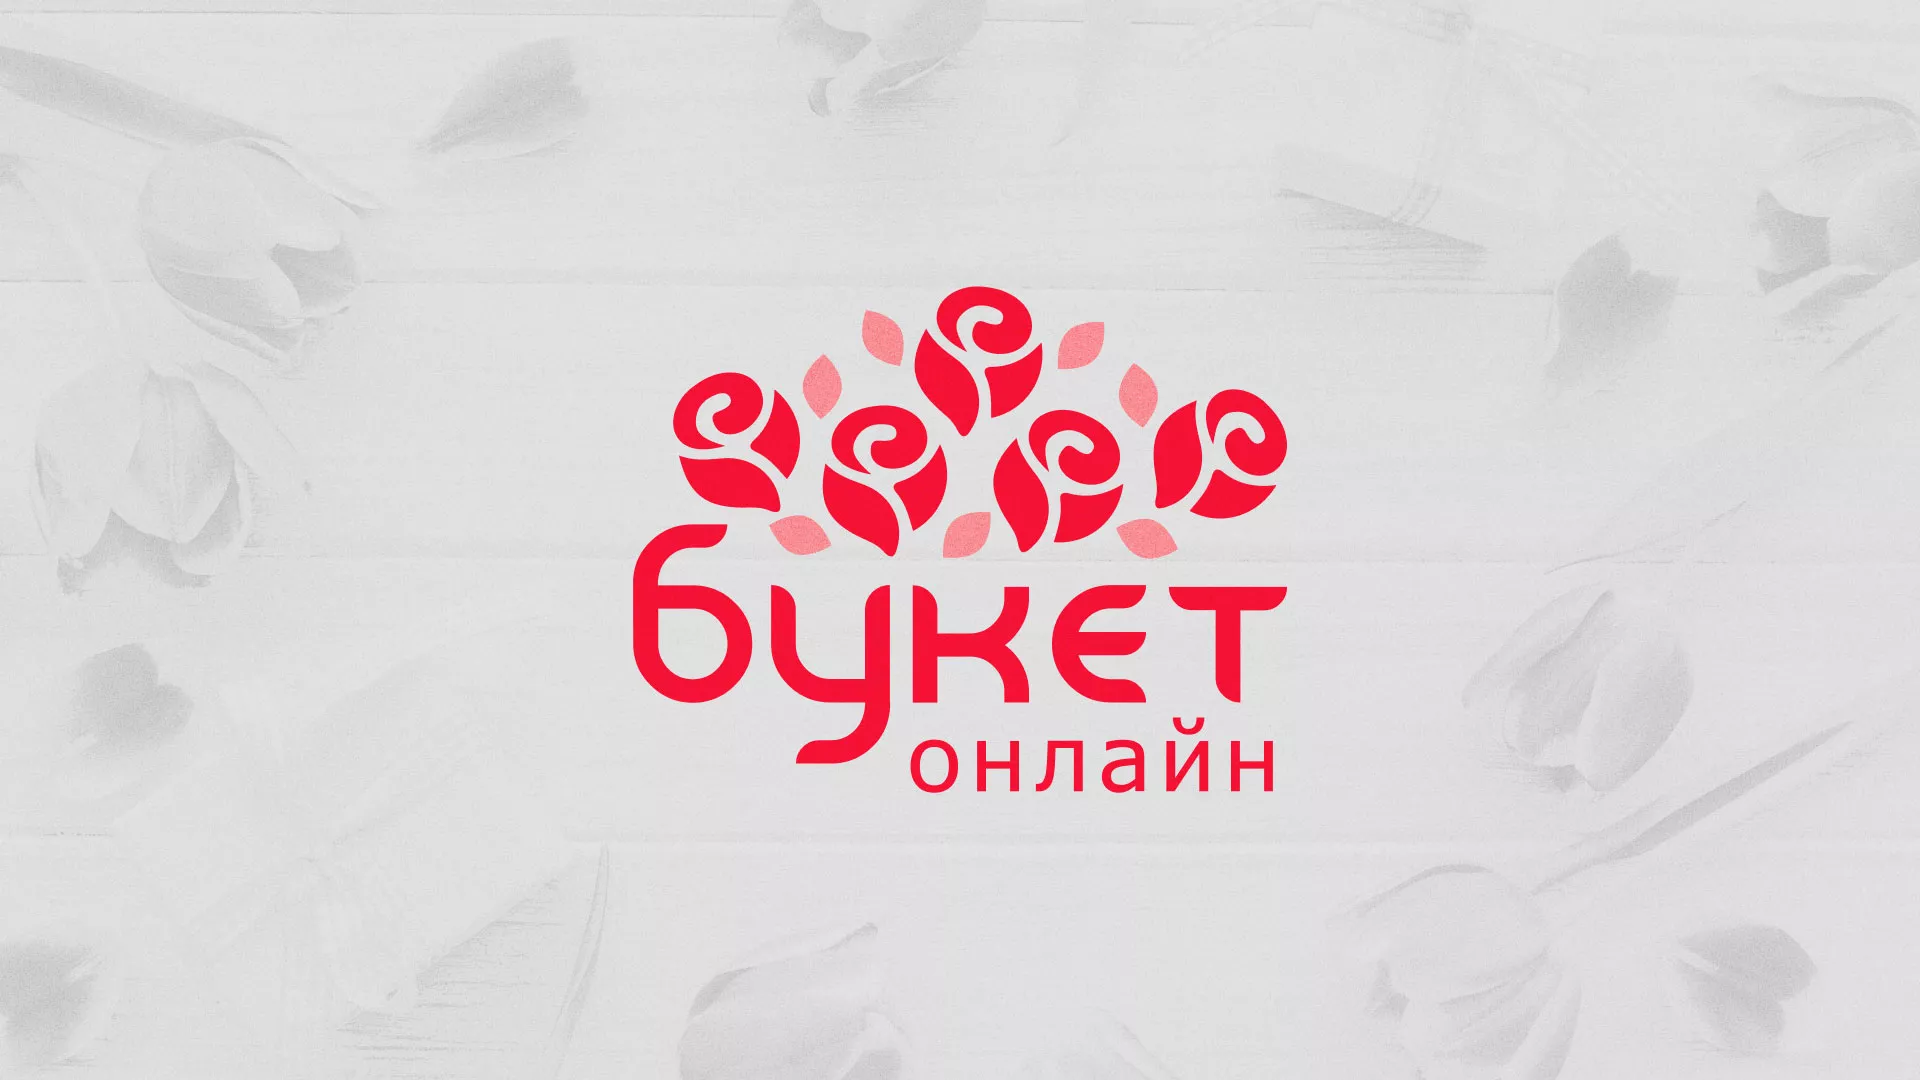 Создание интернет-магазина «Букет-онлайн» по цветам в Гороховце